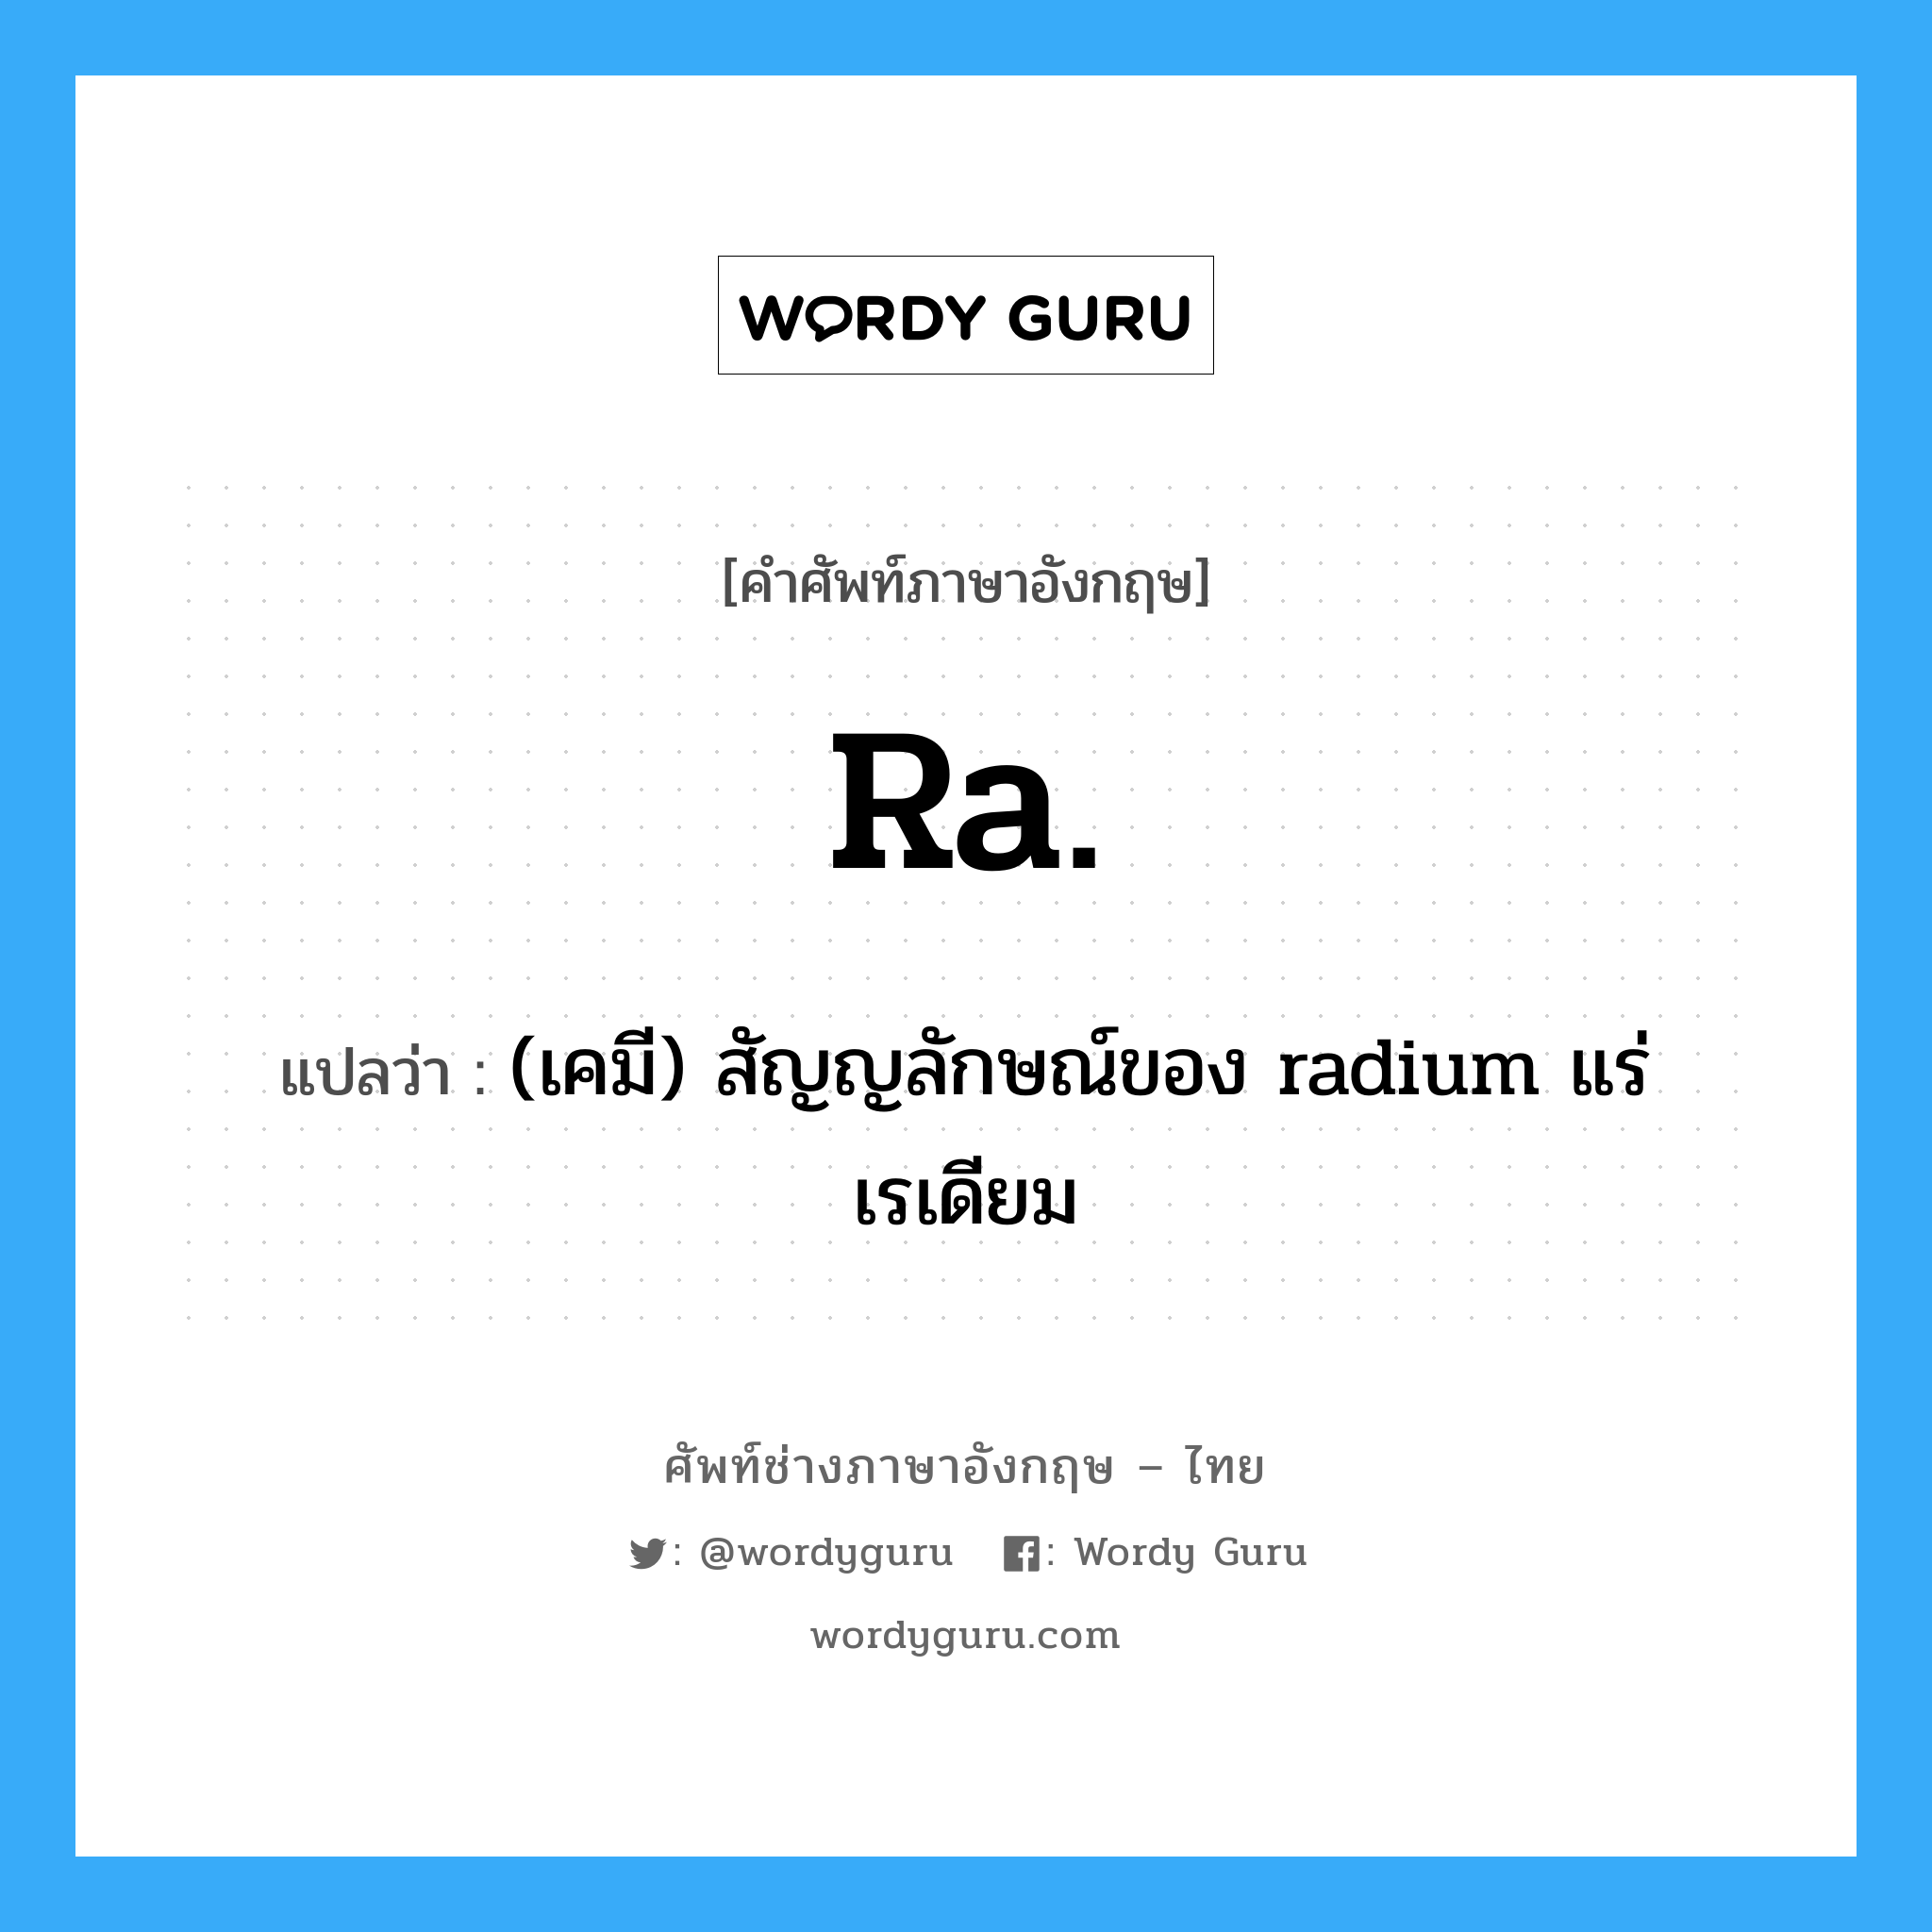 (เคมี) สัญญลักษณ์ของ radium แร่เรเดียม ภาษาอังกฤษ?, คำศัพท์ช่างภาษาอังกฤษ - ไทย (เคมี) สัญญลักษณ์ของ radium แร่เรเดียม คำศัพท์ภาษาอังกฤษ (เคมี) สัญญลักษณ์ของ radium แร่เรเดียม แปลว่า Ra.